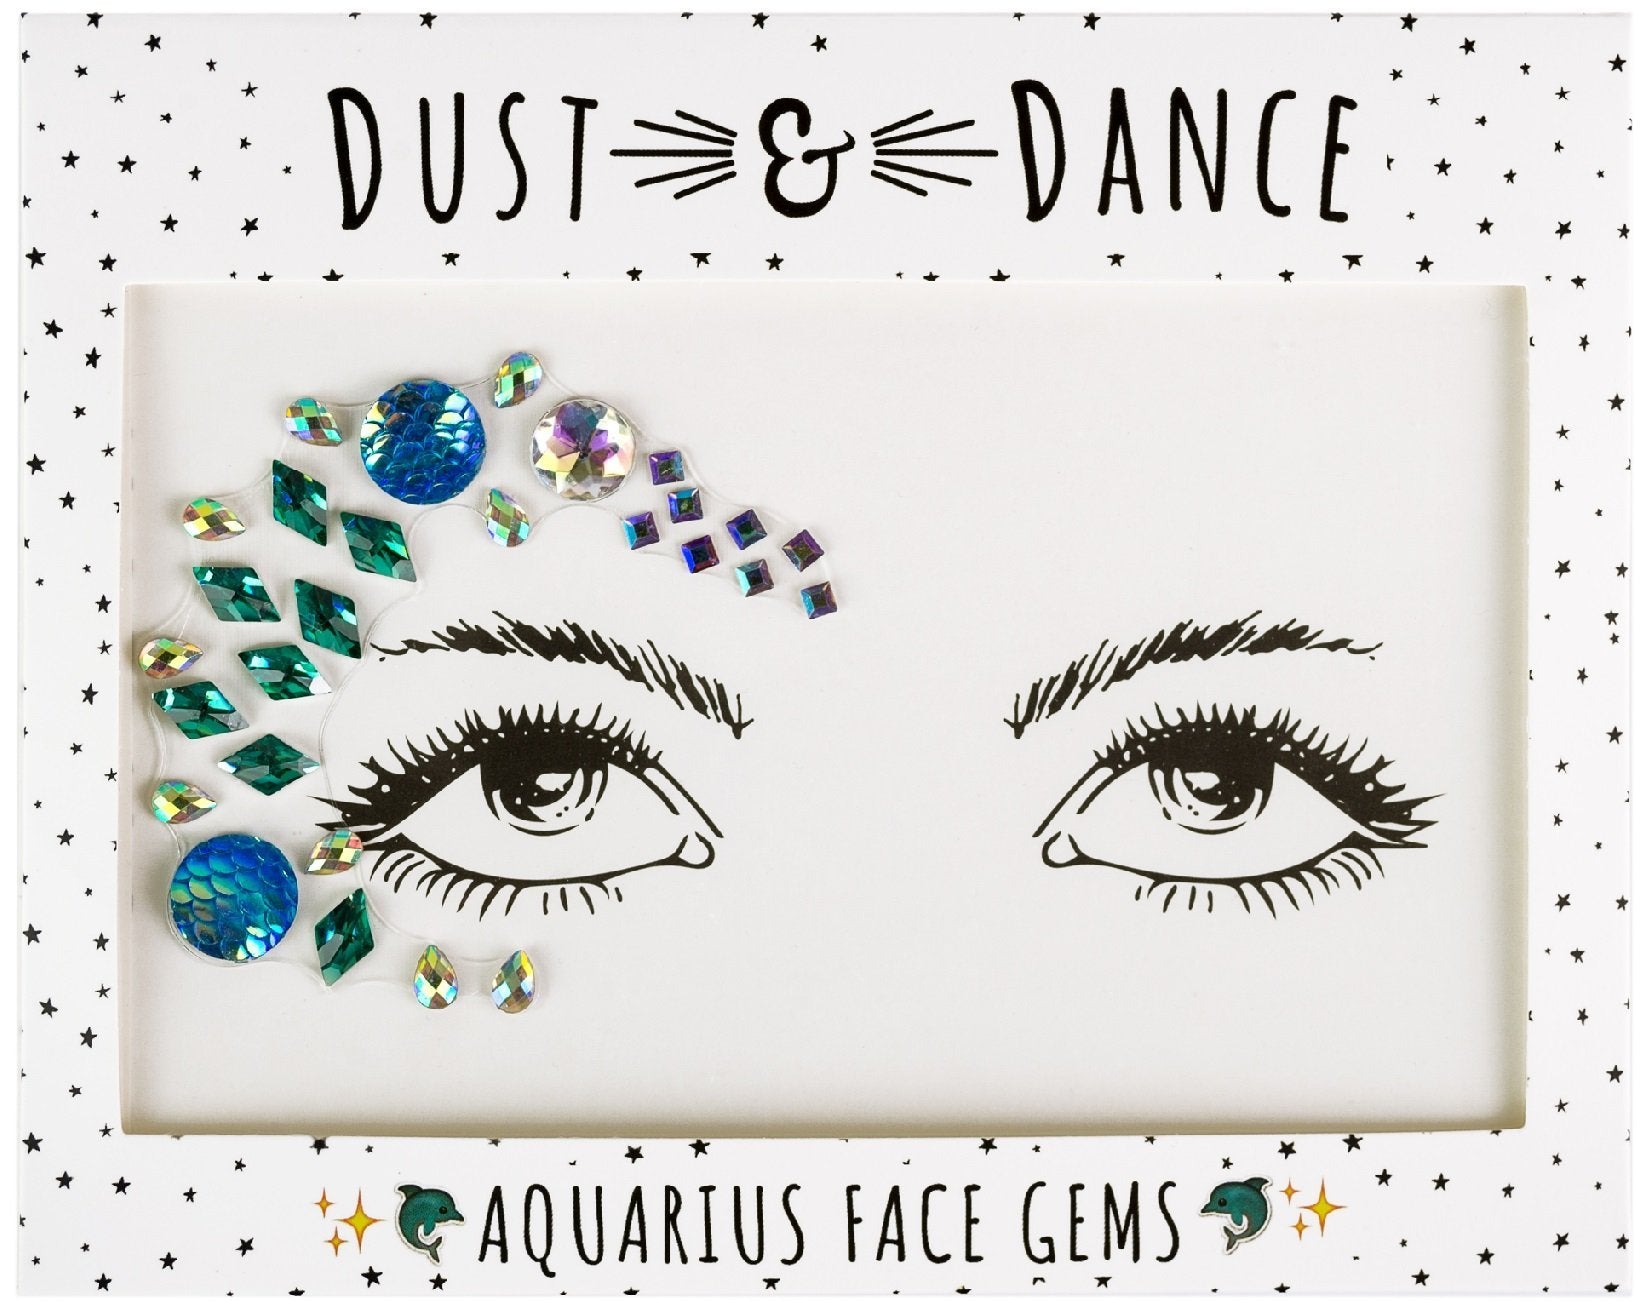 Aquarius Face Jewels - Dust & Dance